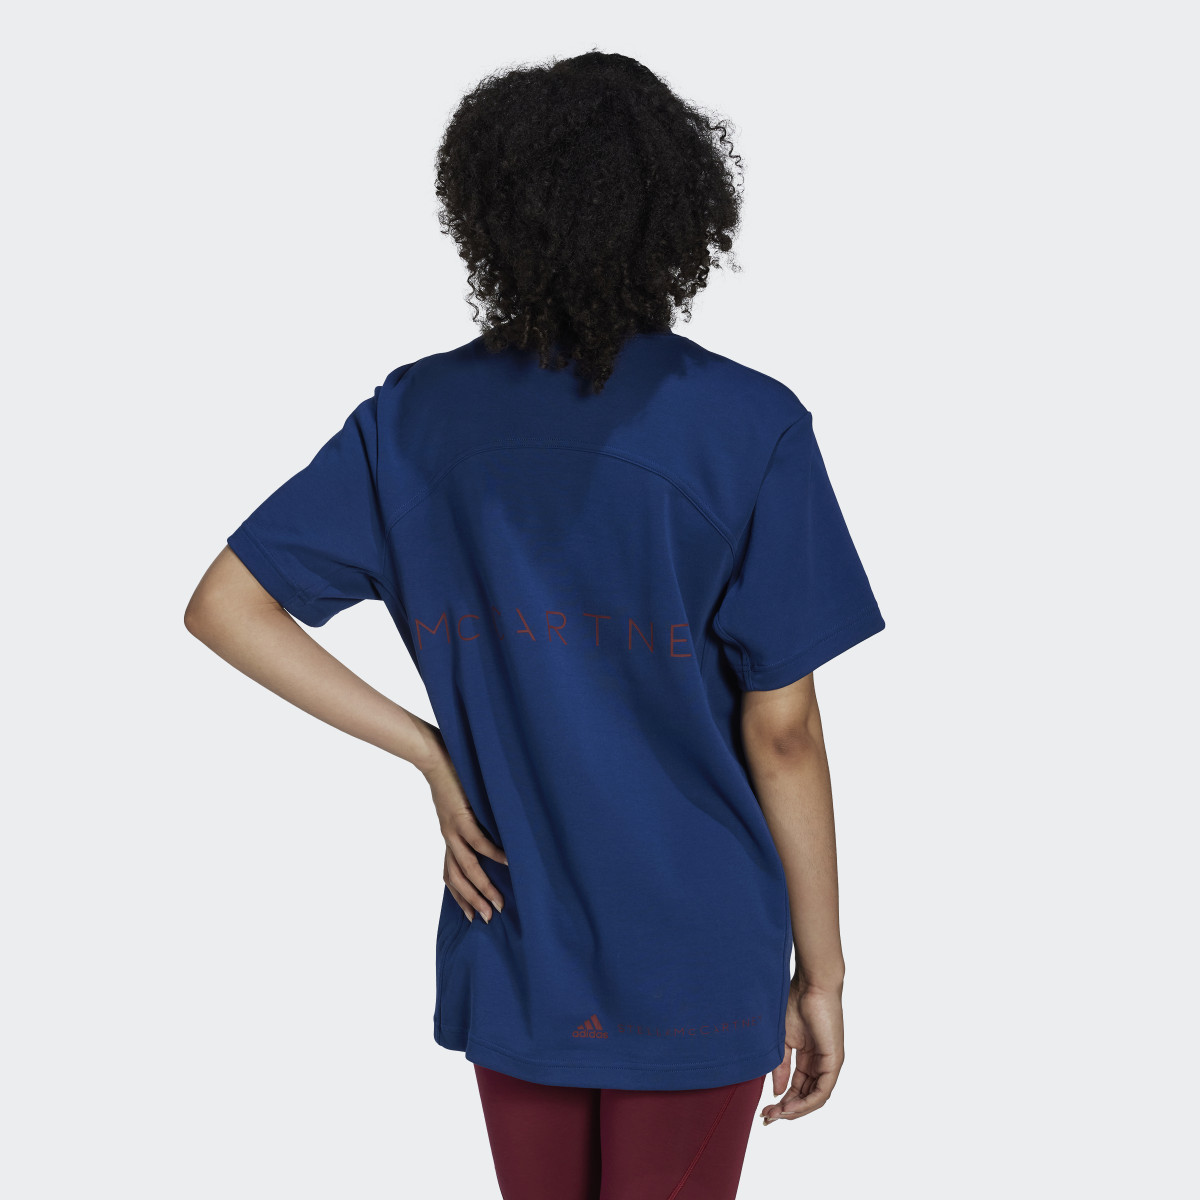 Adidas by Stella McCartney Logo T-Shirt. 3